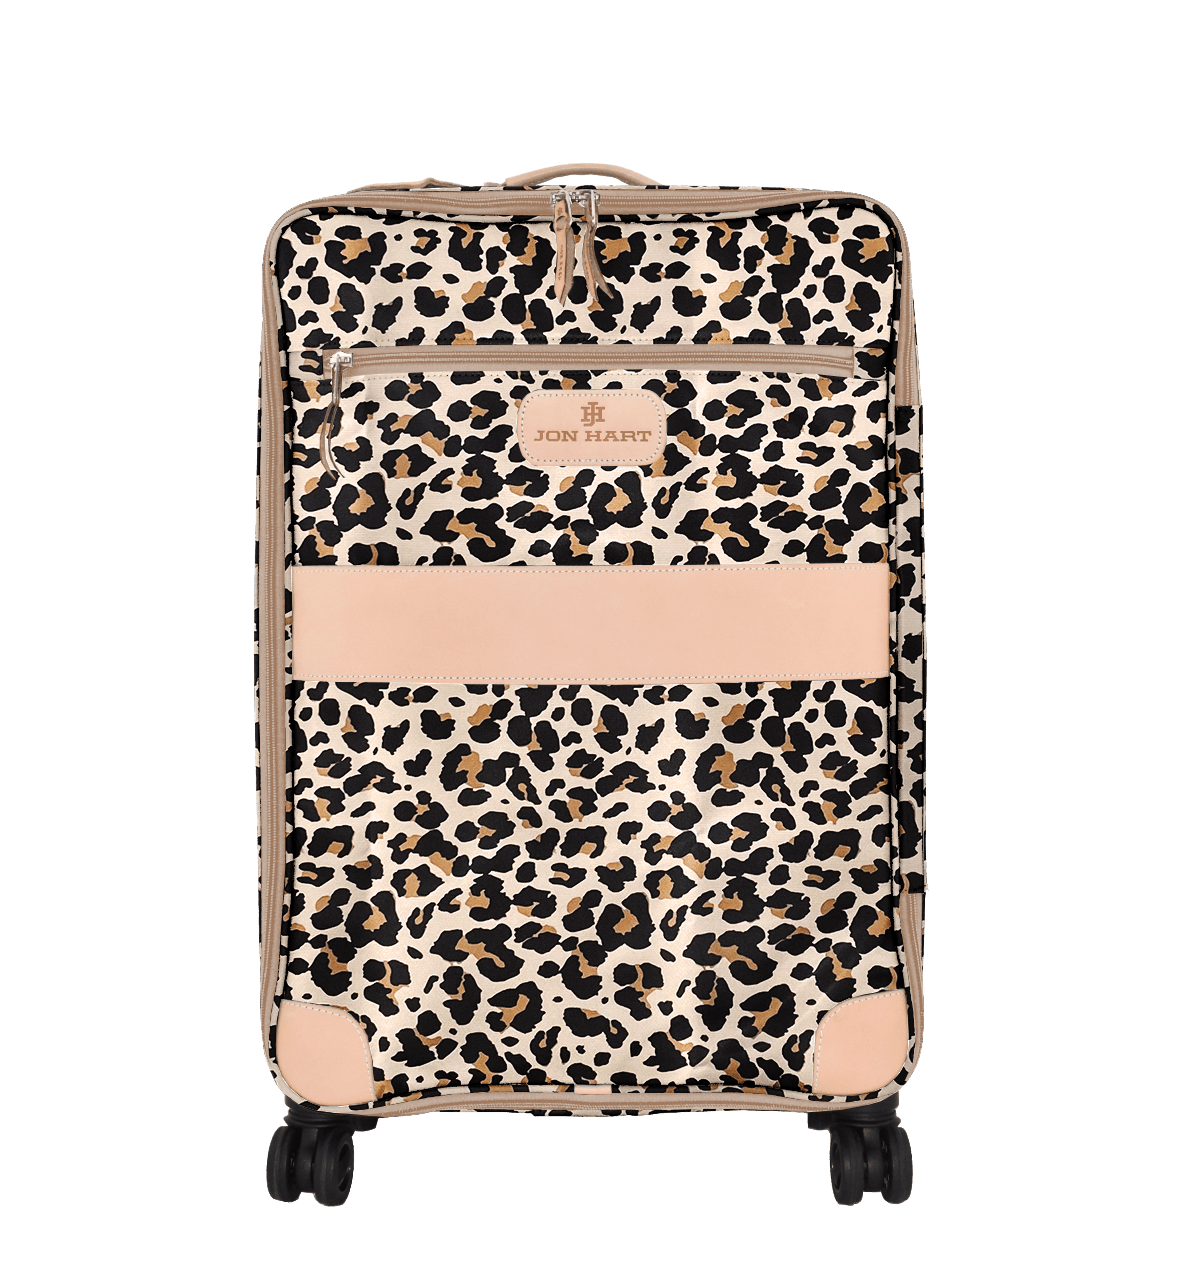 Jon Hart Wheels Luggage (360) Large + Garment Sleeve (Redesigned)